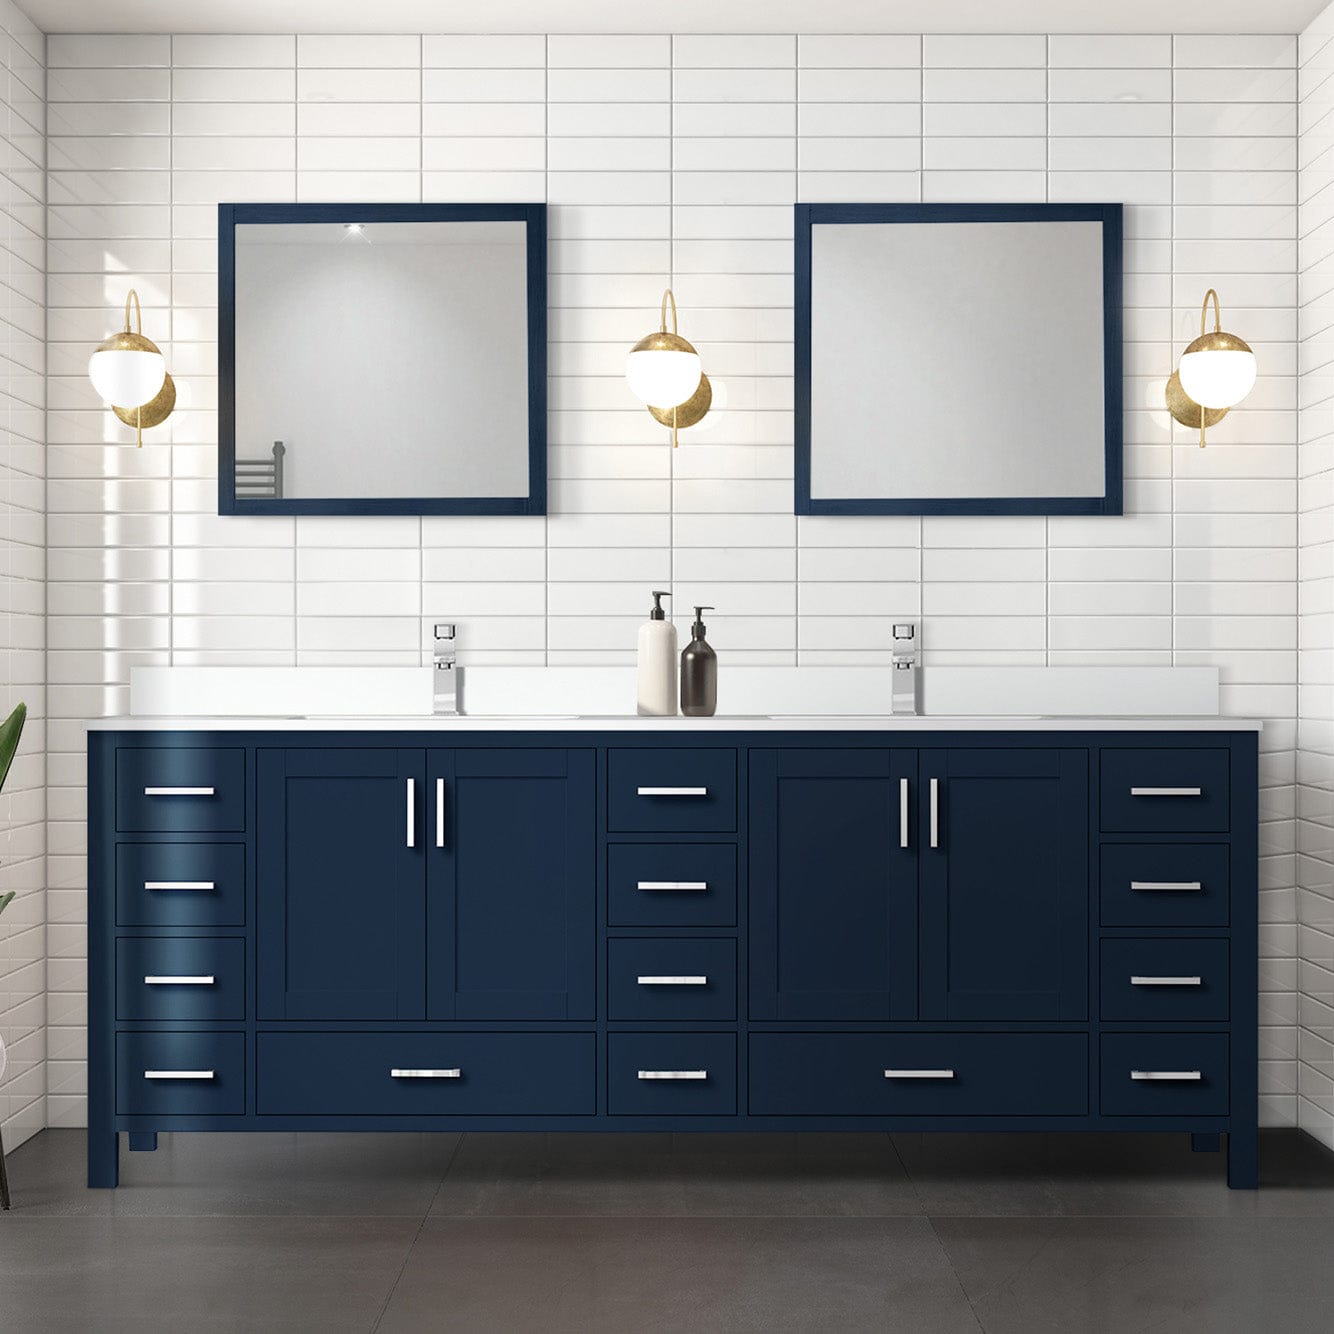 Lexora Bathroom Vanity Navy Blue / Cultured Marble / No Mirror Big Sur 84" x 22" Double Bath Vanity